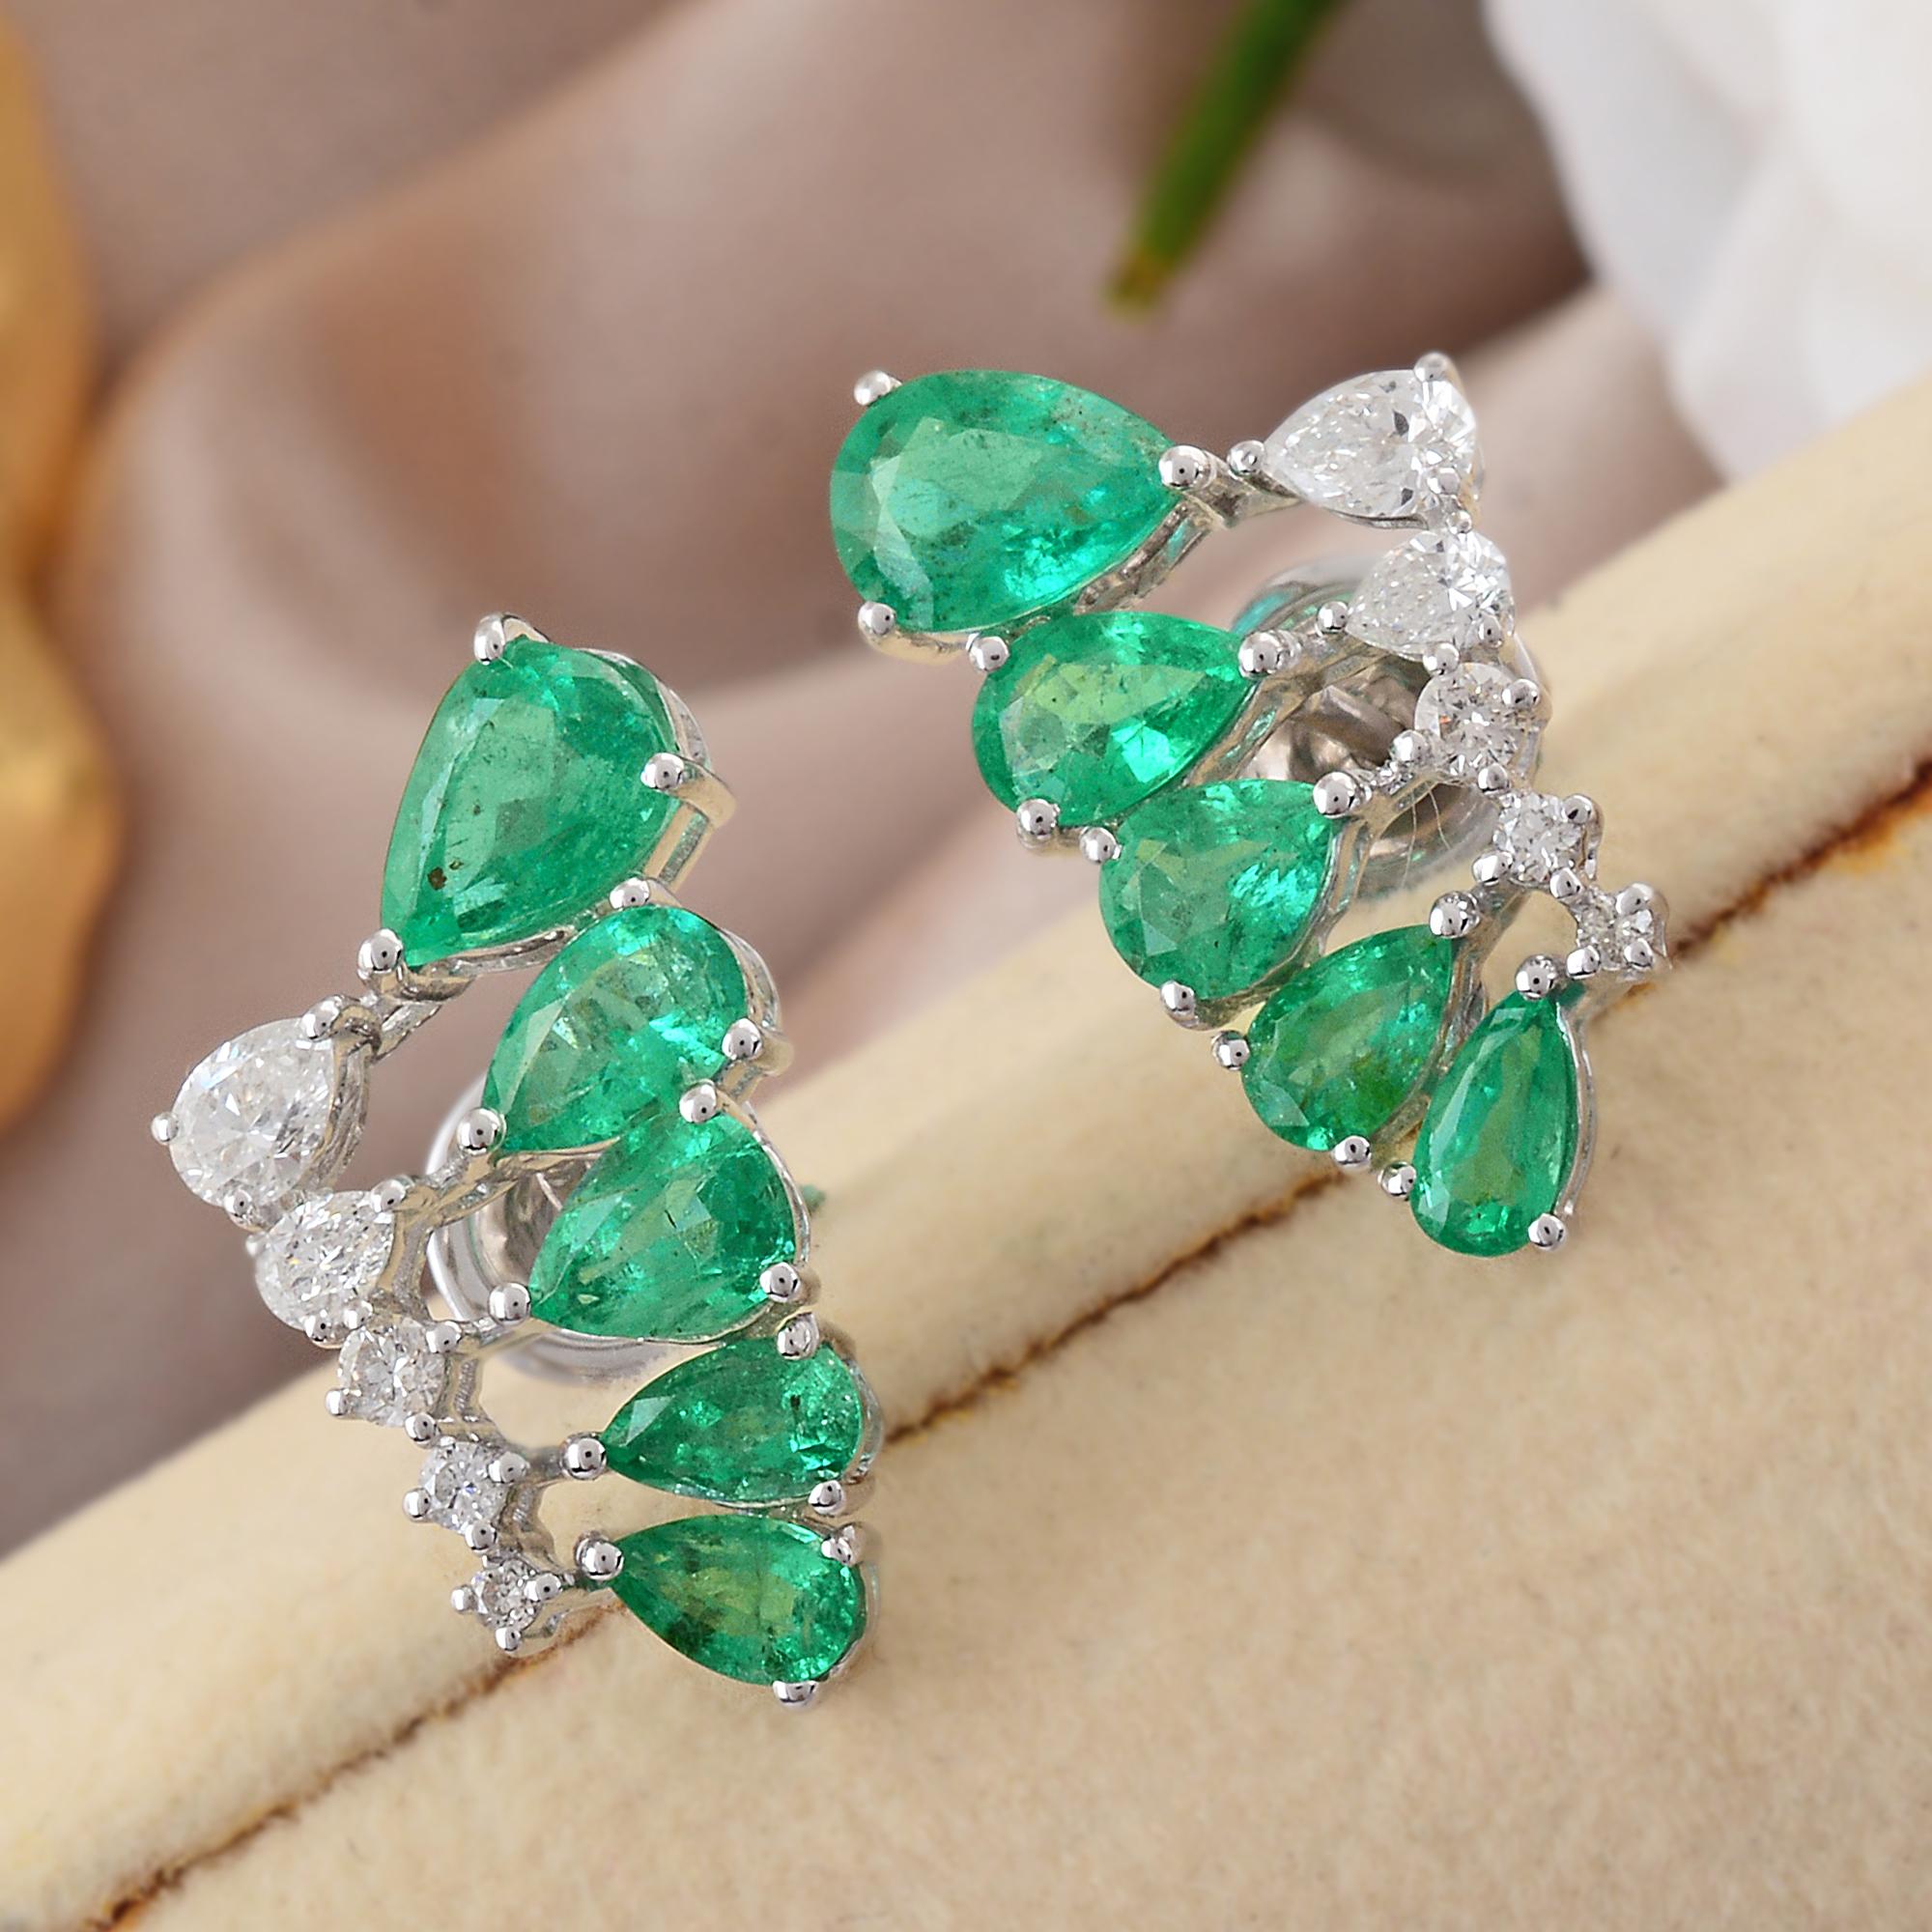 Modern Pear Zambian Emerald Gemstone Earrings Diamond 18 Karat White Gold Fine Jewelry For Sale